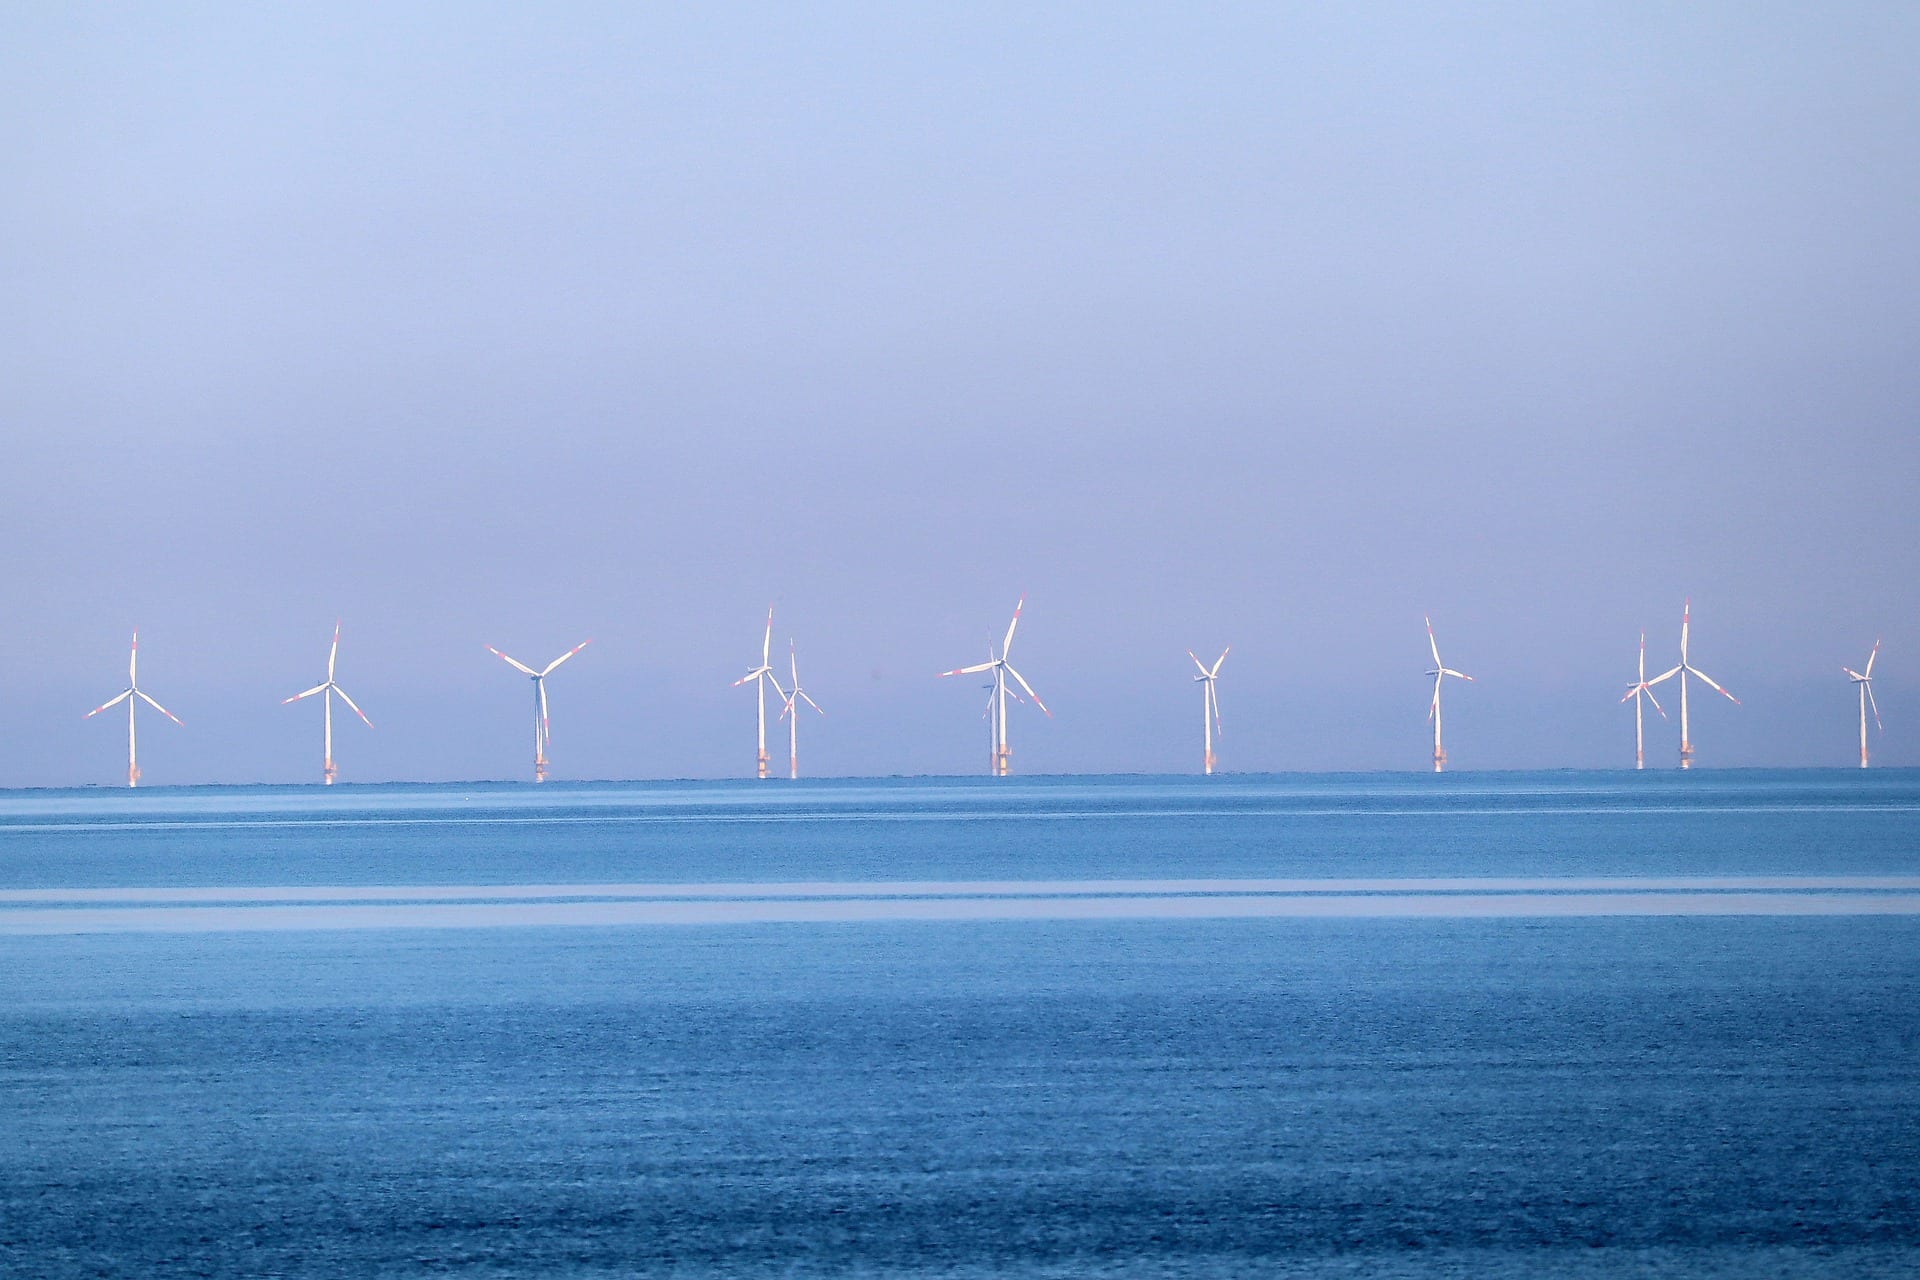 Colômbia prevê leilão para eólicas offshore, mas sem avaliar impactos ambientais. Na imagem: Praia com mar azul e, ao fundo, aerogeradores de parque eólico offshore (Foto: Thomas G./Pixabay)